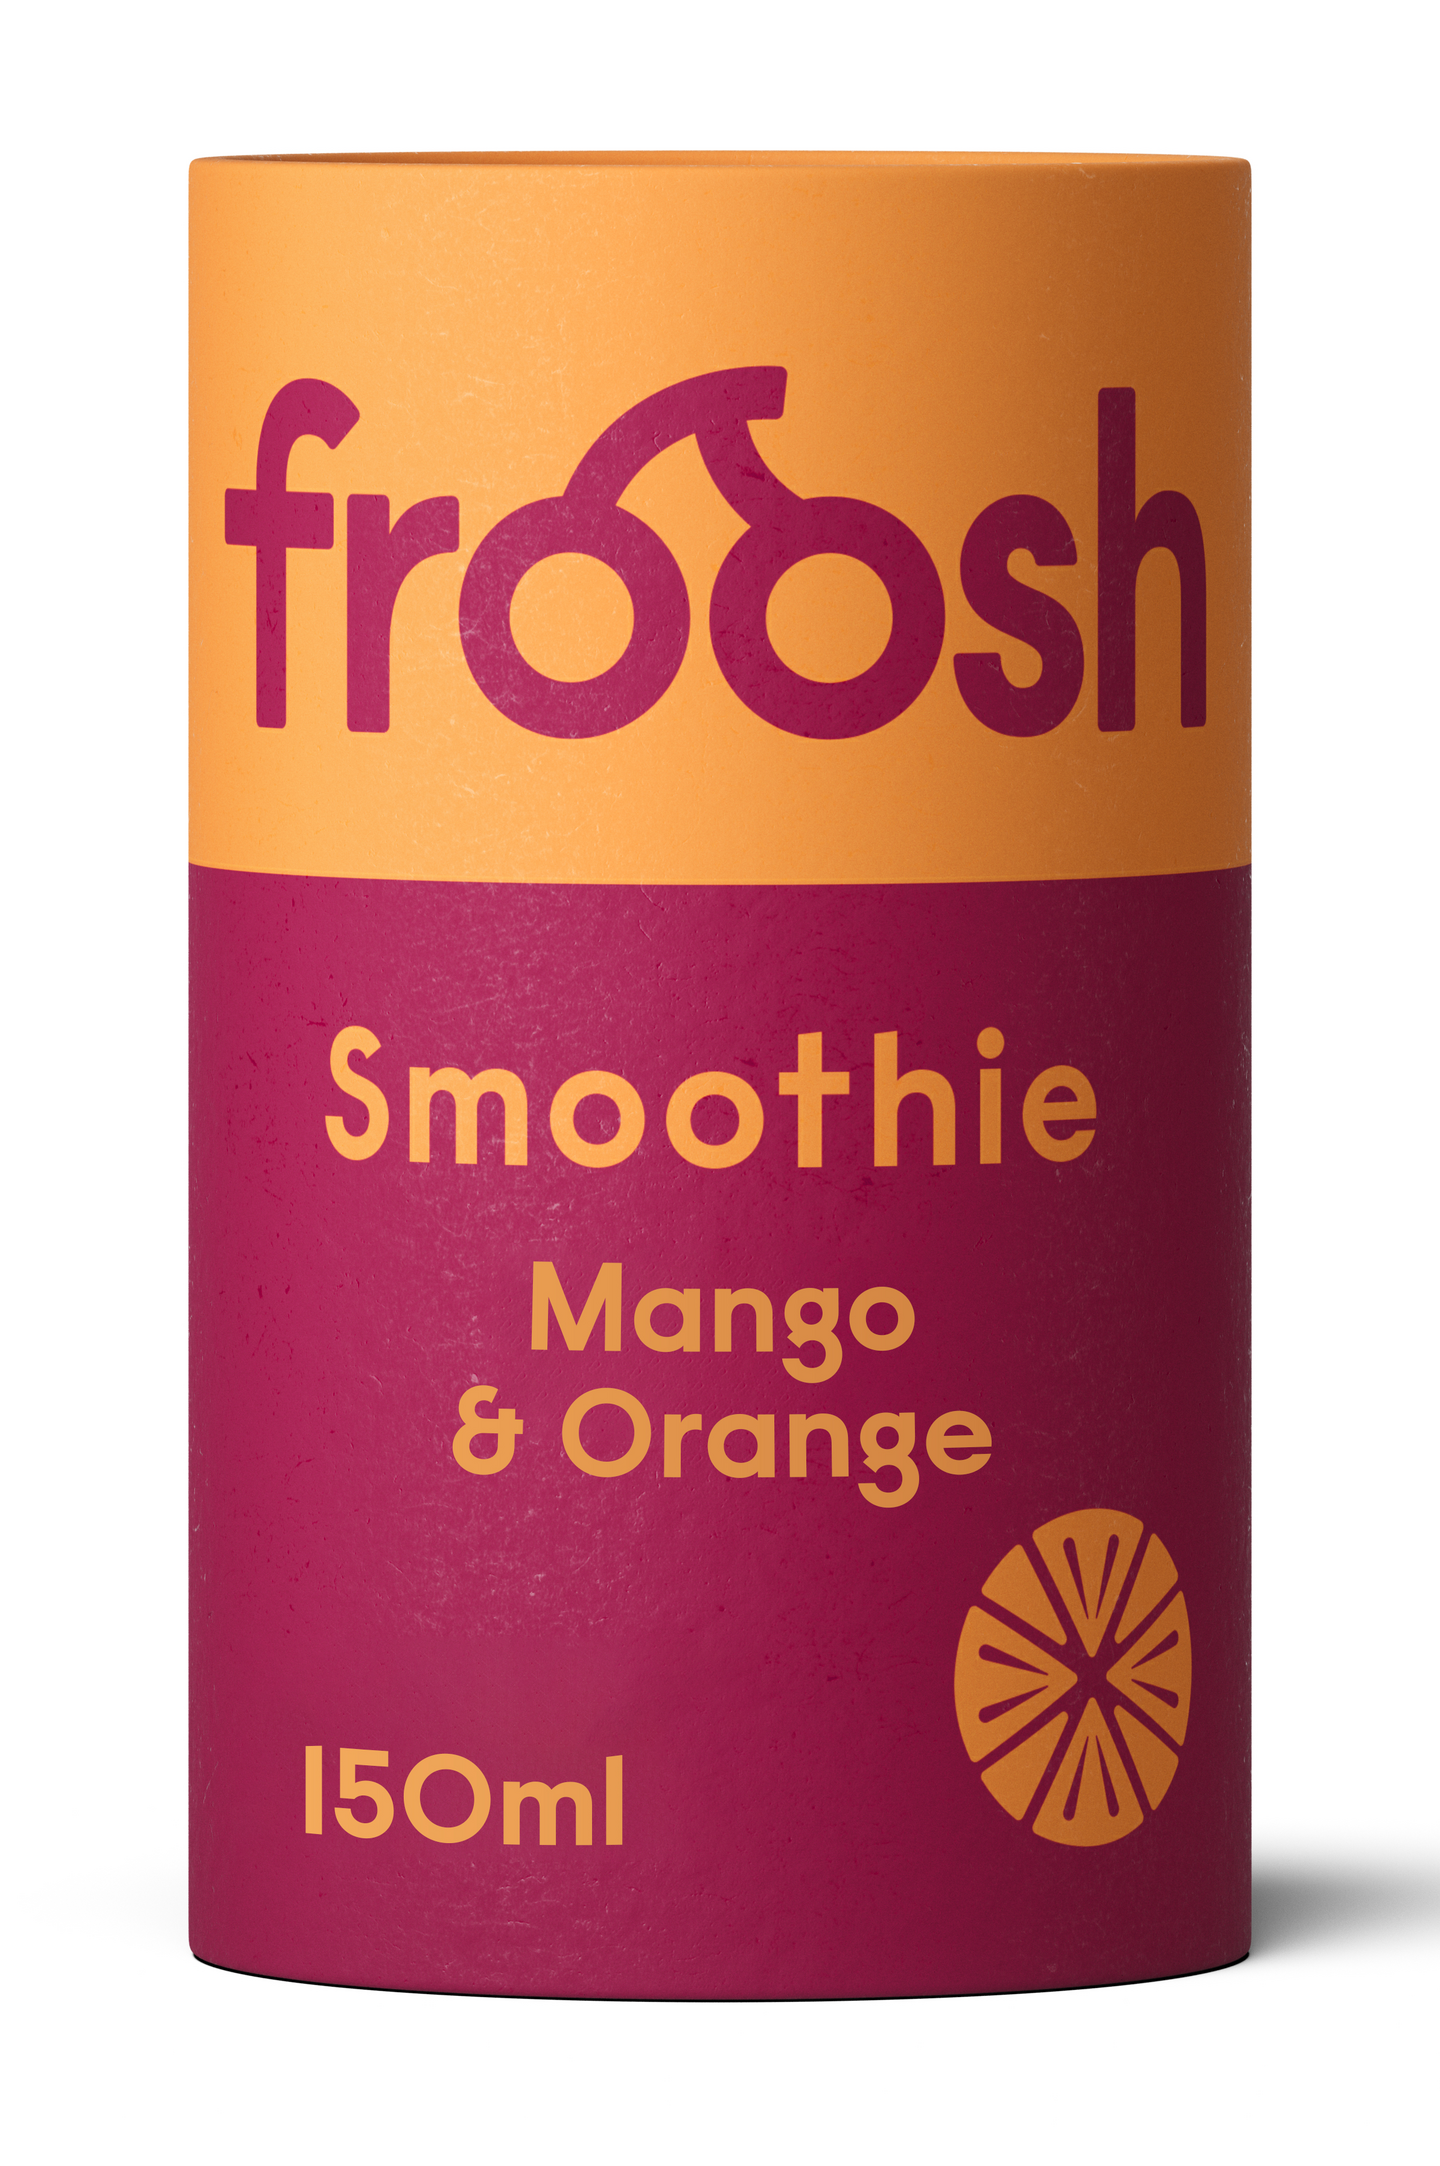 Froosh Shorty Mango & Appelsiini smoothie 150ml — HoReCa-tukku Kespro